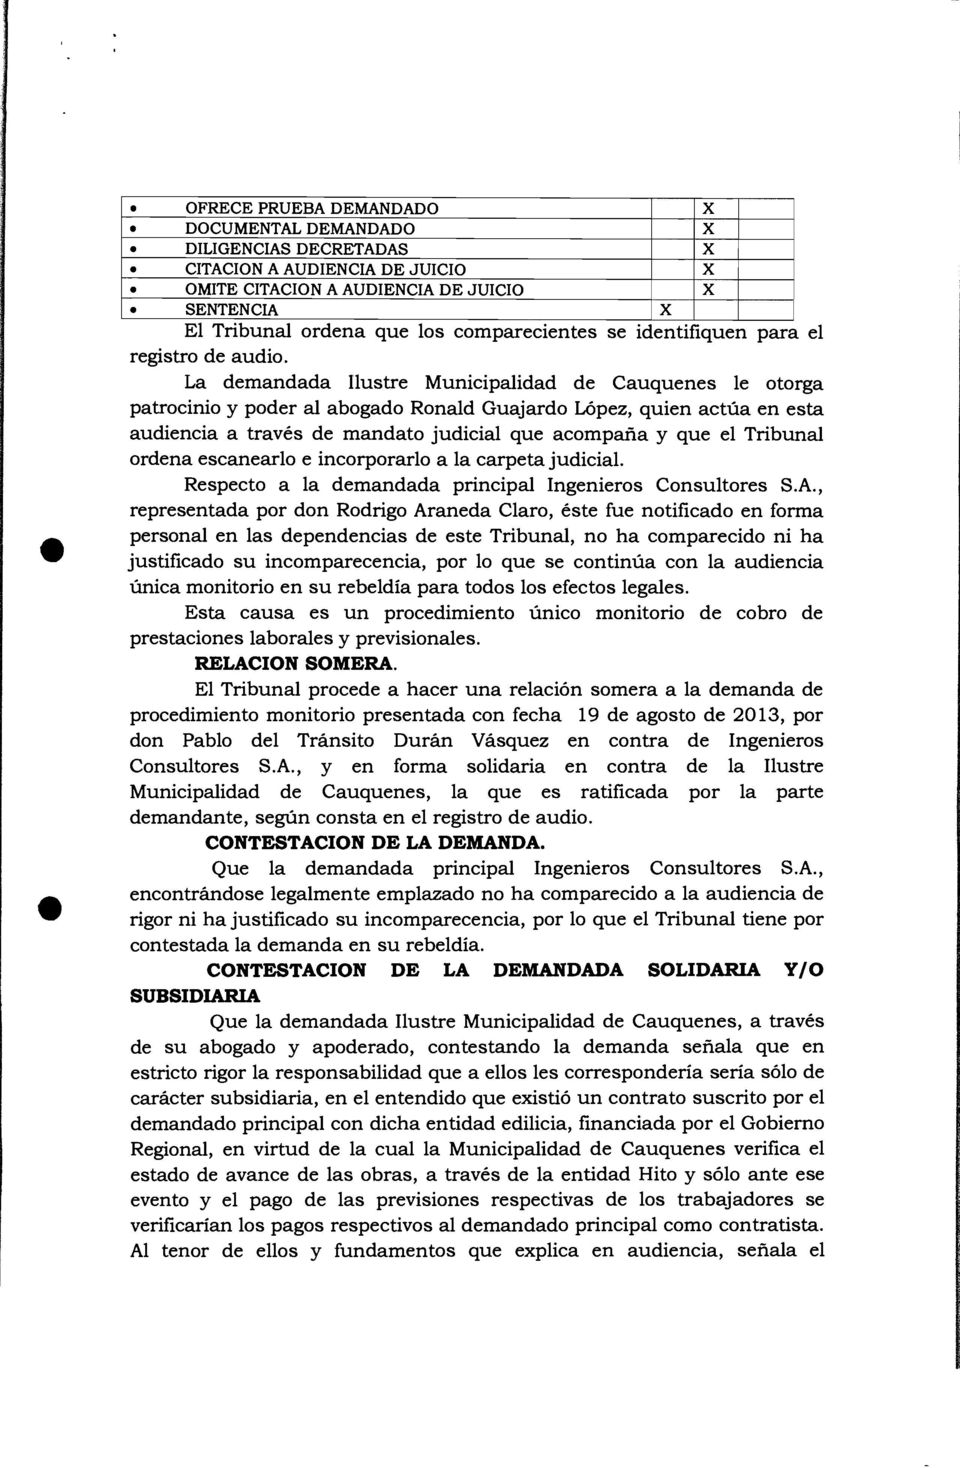 La demandada Ilustre Municipalidad de Cauquenes le otorga patrocinio y poder al abogado Ronald Guajardo López, quien actúa en esta audiencia a través de mandato judicial que acompaña y que el